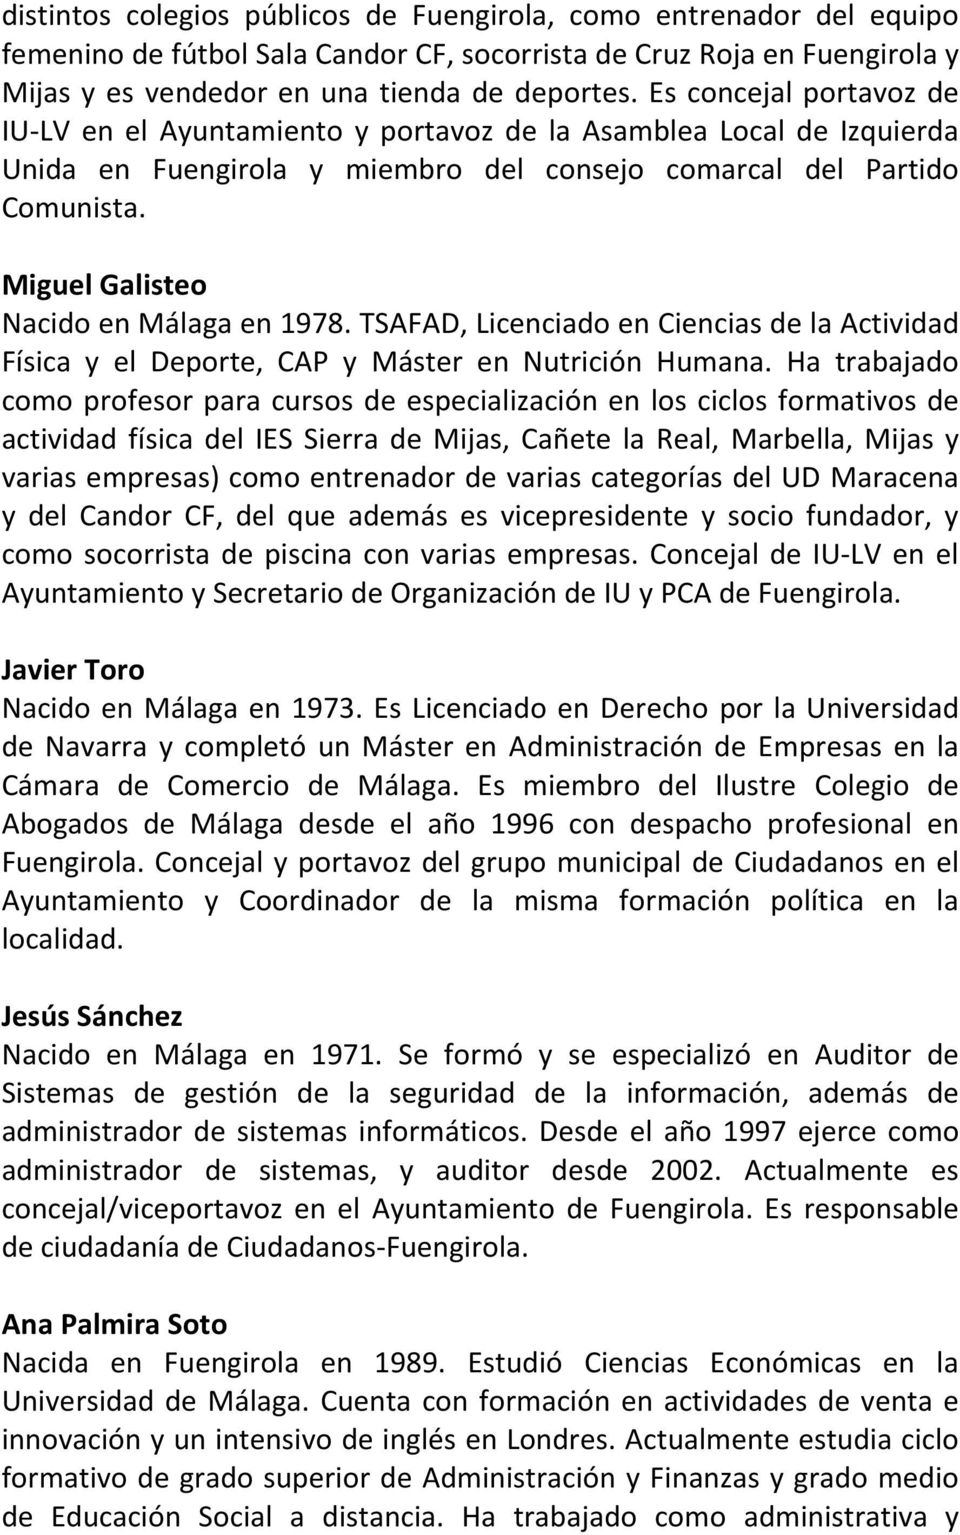 Miguel Galisteo Nacido en Málaga en 1978. TSAFAD, Licenciado en Ciencias de la Actividad Física y el Deporte, CAP y Máster en Nutrición Humana.